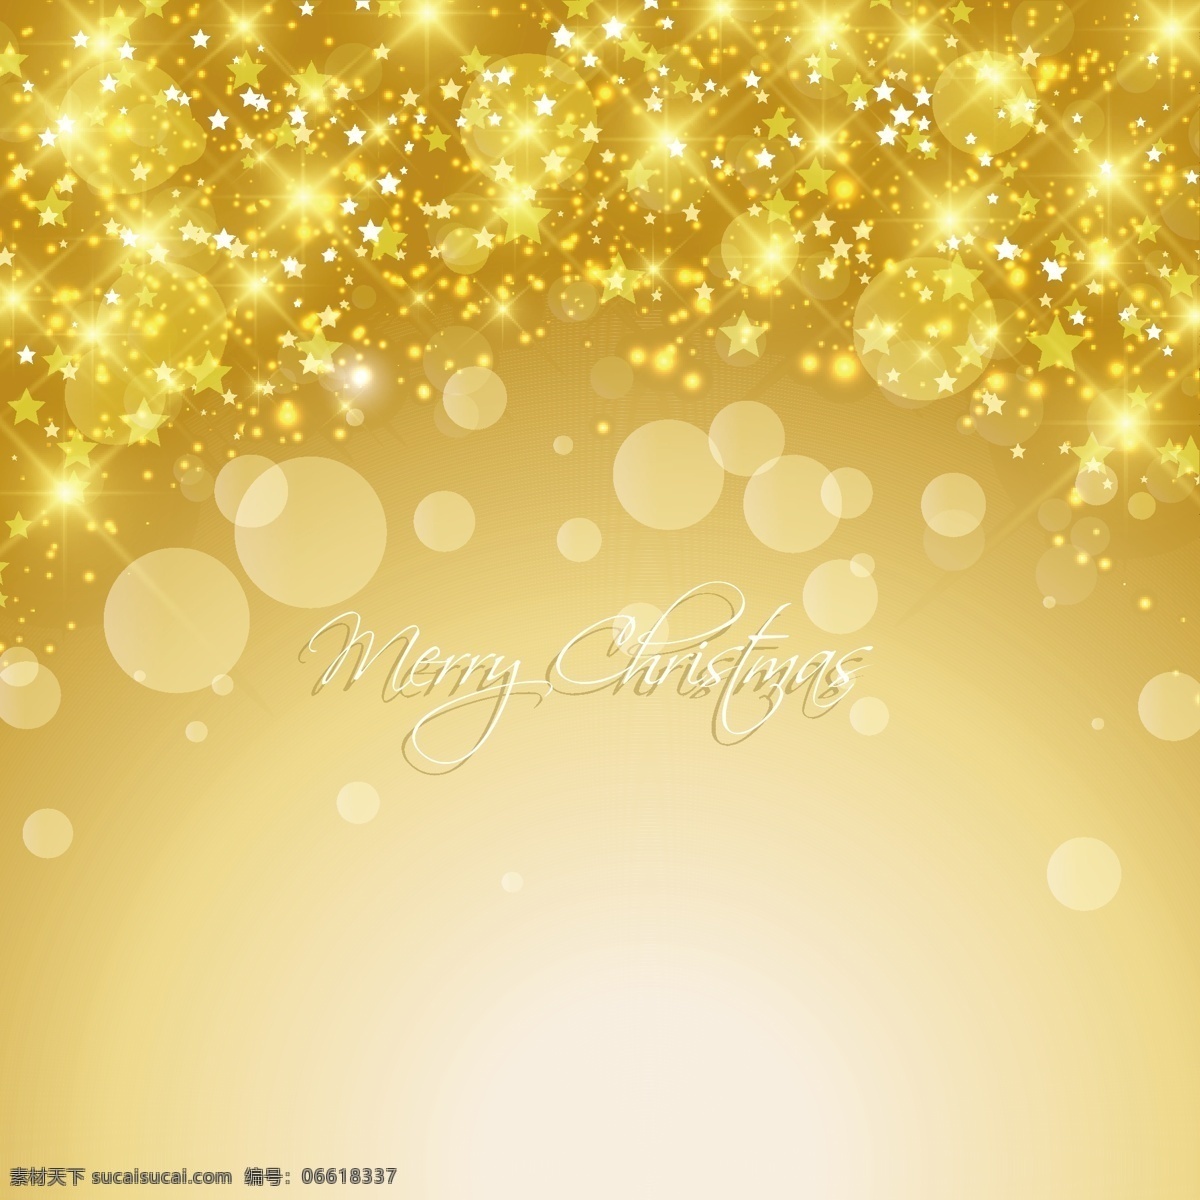 金色 圣诞 背景 圣诞节 黄金 圣诞快乐 冬天快乐 圣诞的颜色 庆祝 节日 闪闪发光 金色的 丰富多彩 下 黄金的背景下 节日快乐 冬天的背景 金色的背景 明亮的季节 黄色